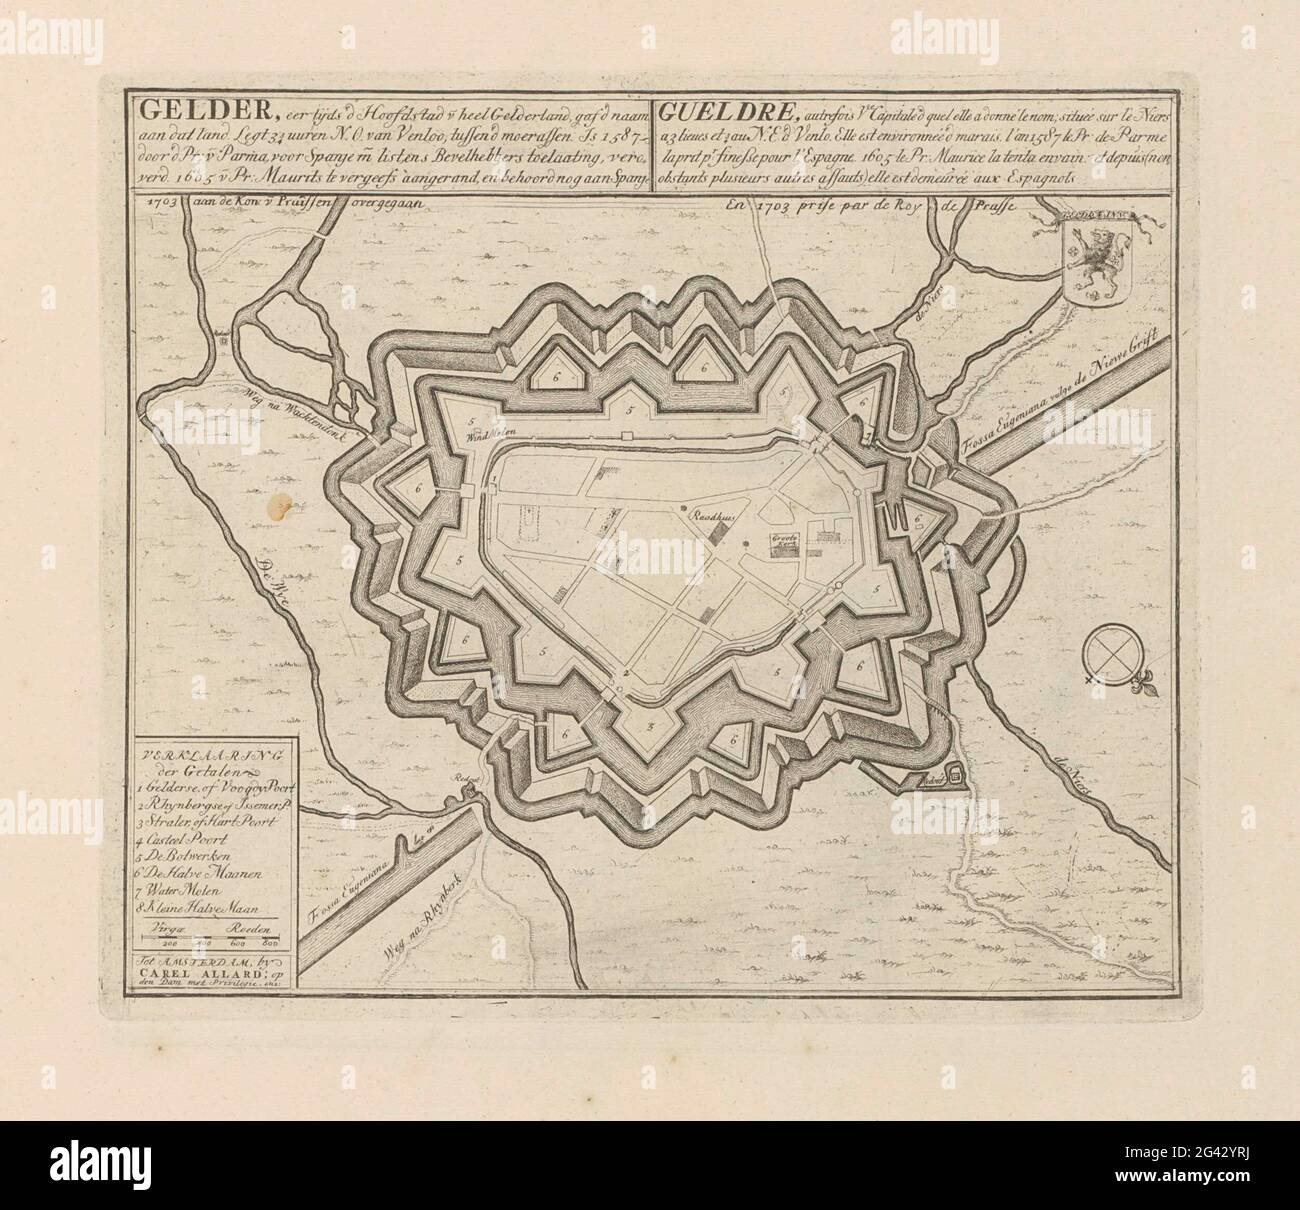 Geldern map; Gelder, formerly d capital v [an] Heel Gelderland (...) 1703  to the [ING] v [an] Prussen; Les Principales Forterses & Villes Fortes,  D'Espagne, De France, D'Italie, The Savoia, D'Allemagne &